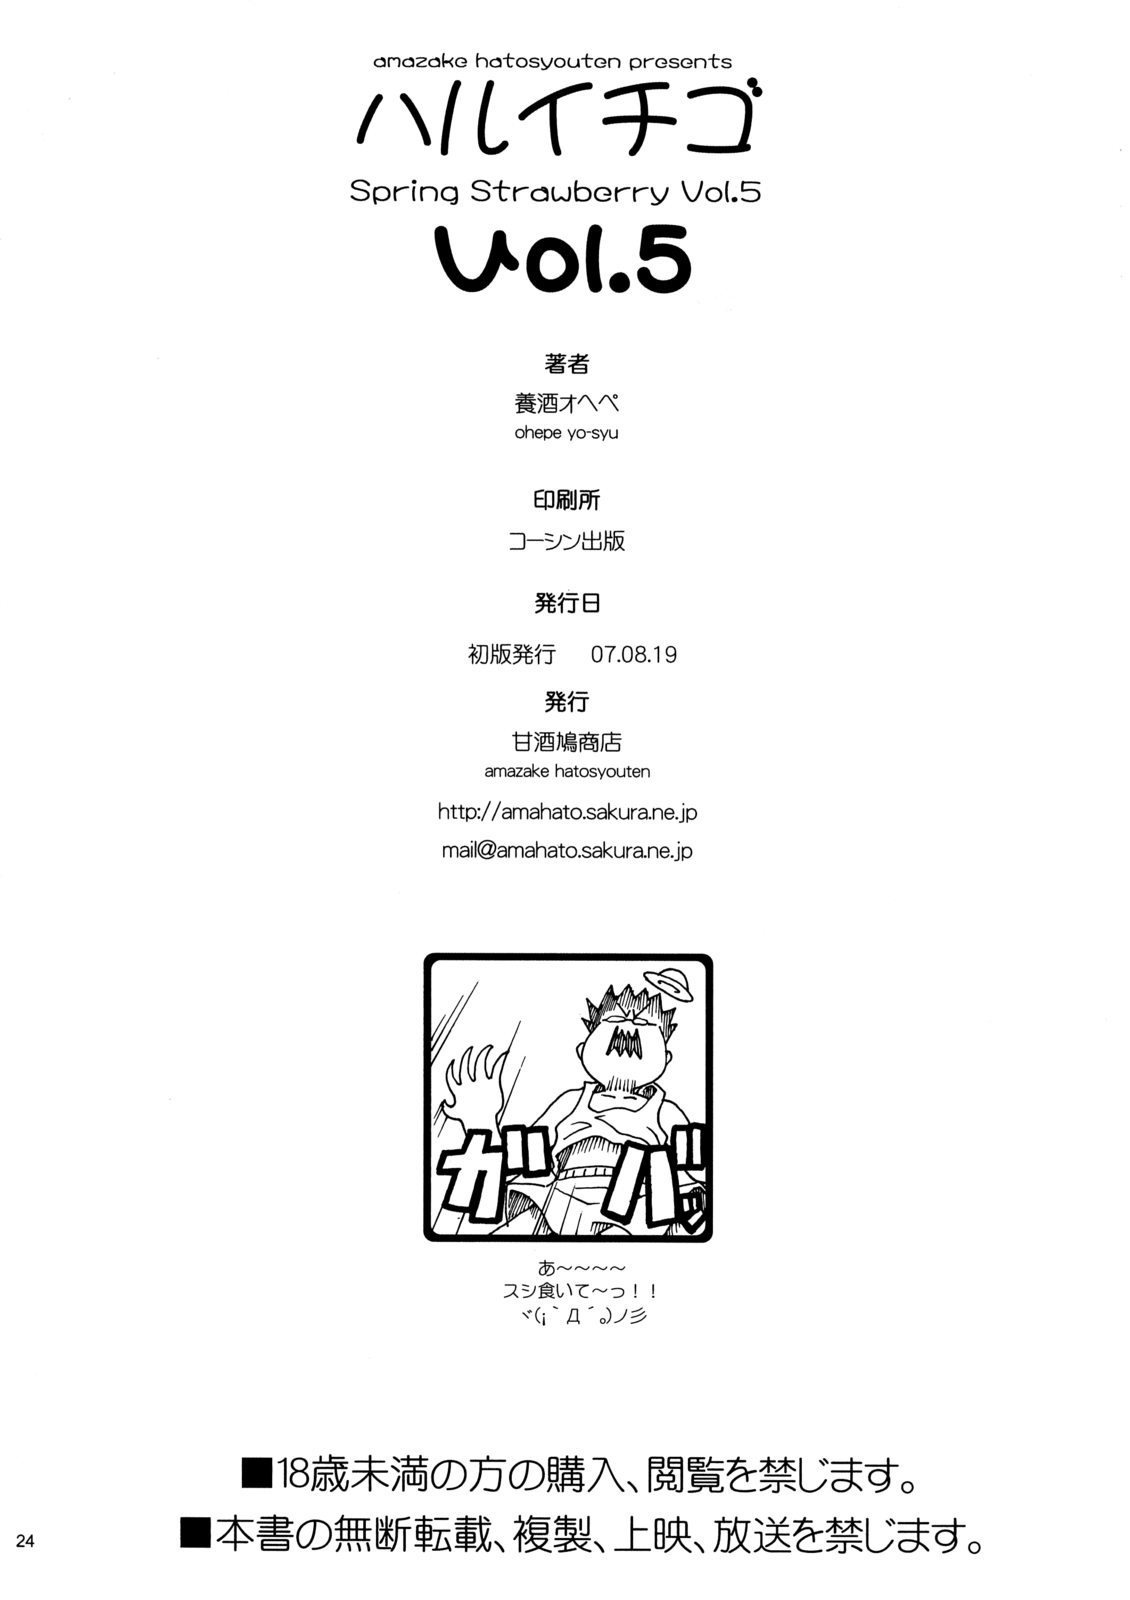 (C72) [Amazake Hatosyo-ten (Yoshu Ohepe)] Haru Ichigo Vol. 5 - Spring Strawberry Vol. 5 (Ichigo 100%) page 21 full